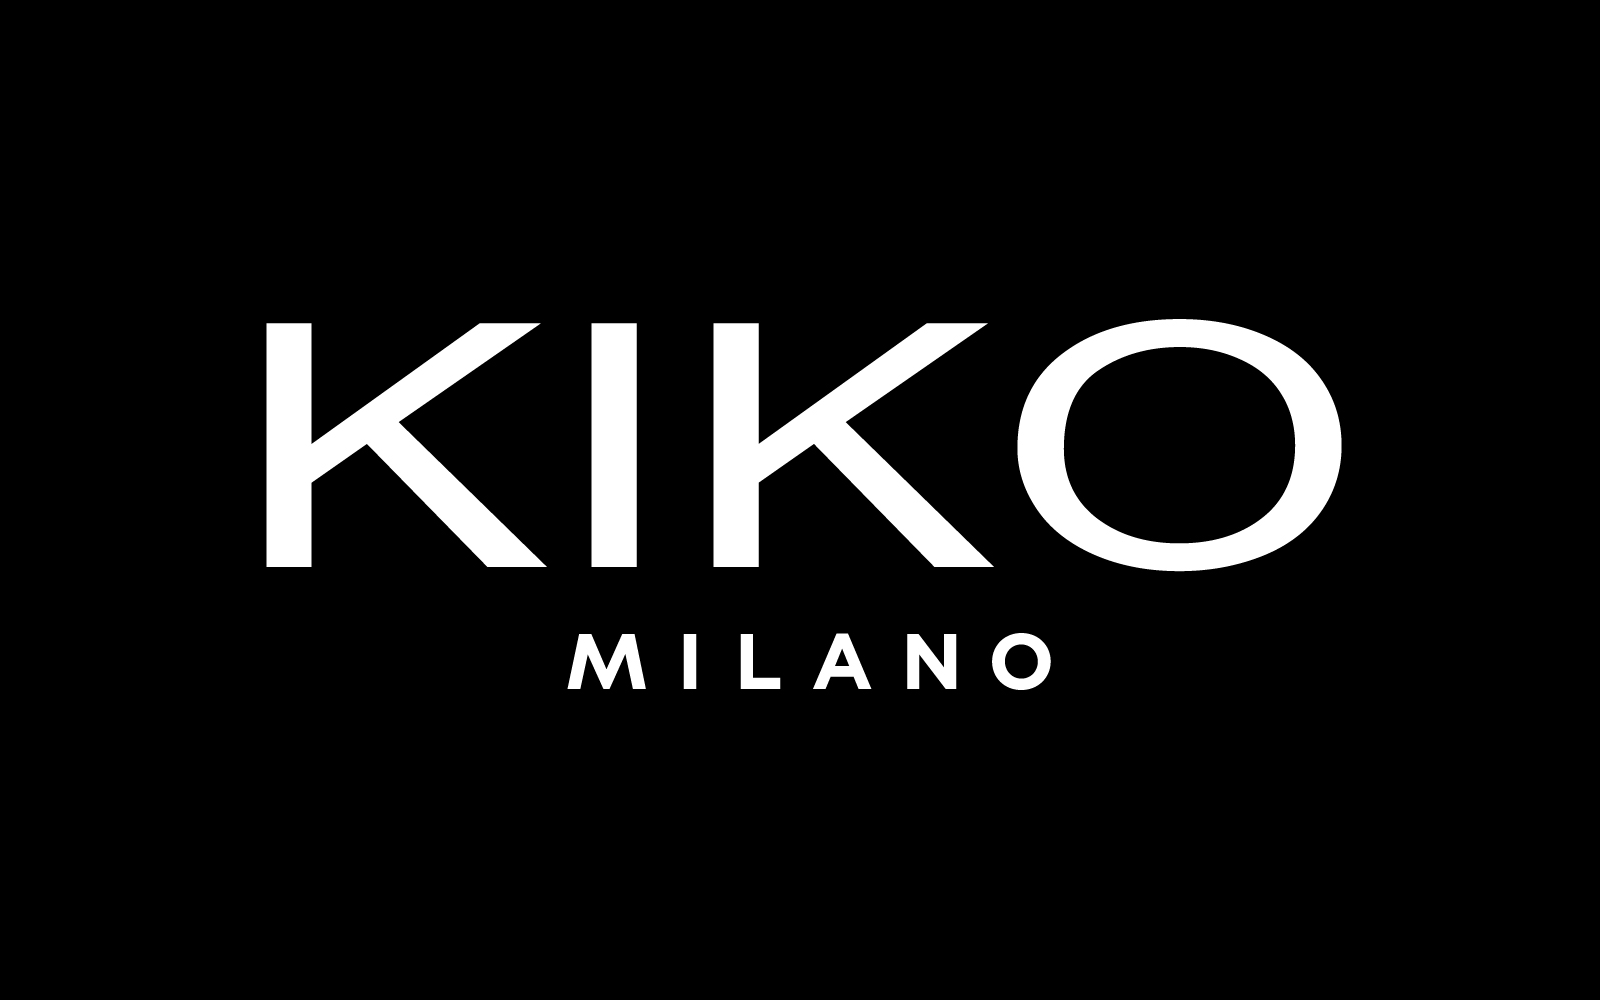 Leading Makeup Company Logo - KIKO MILANO